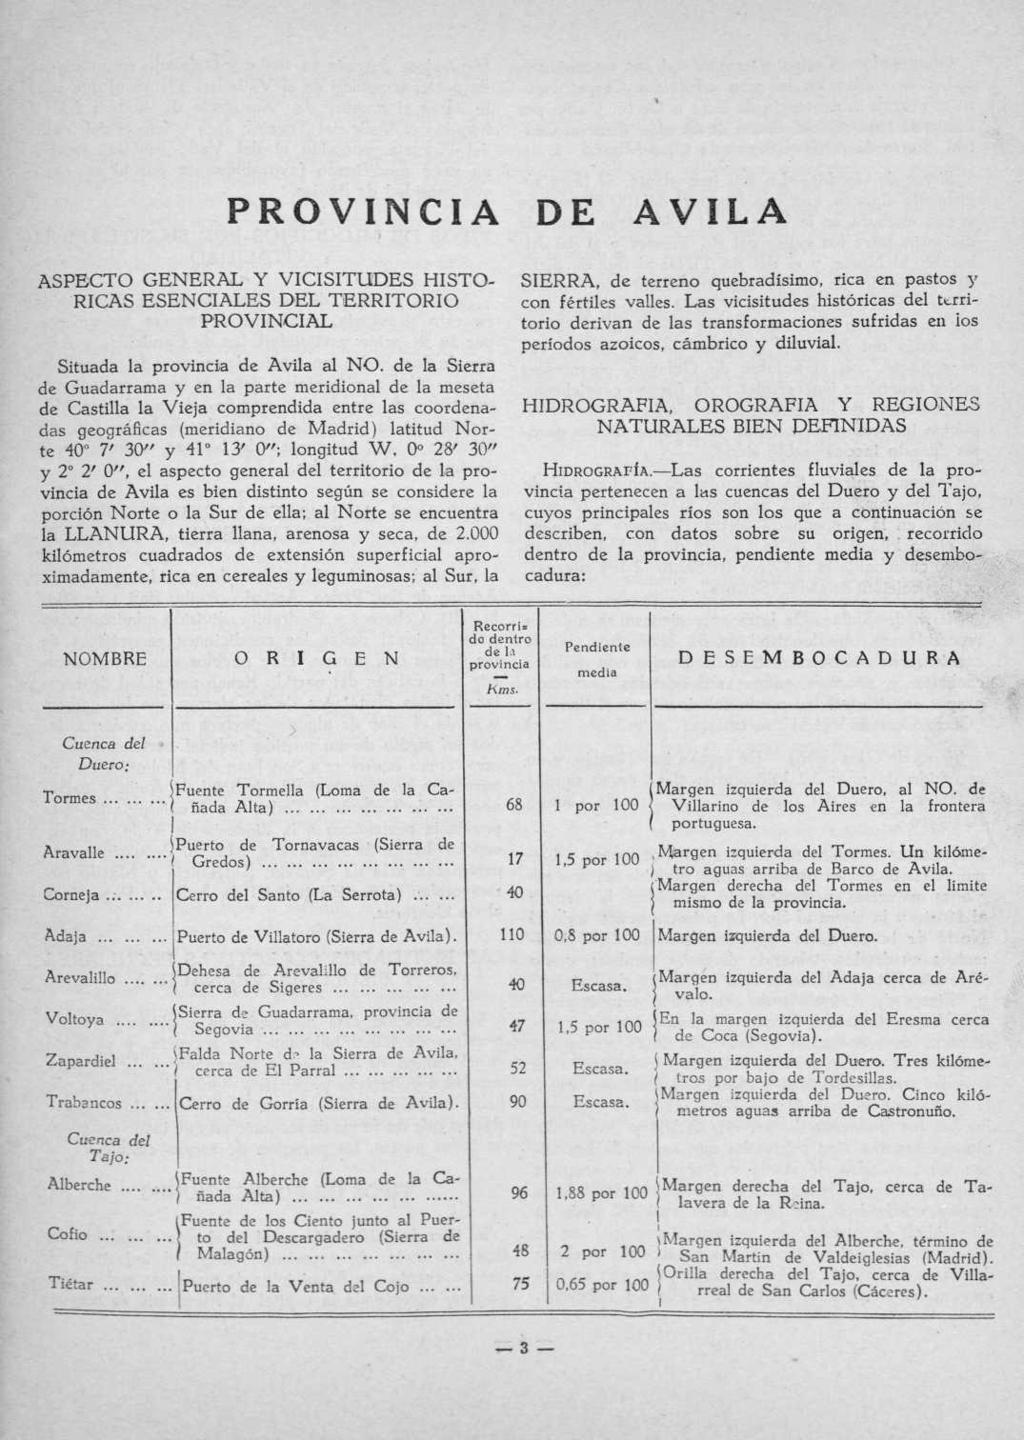 PROVINCI DE AVIL ASPECTO GERAL Y VICISITUDES HISTO RICAS ESCIALES DEL TERRITORIO PROVINCIAL Situada la provincia Avila al NO.